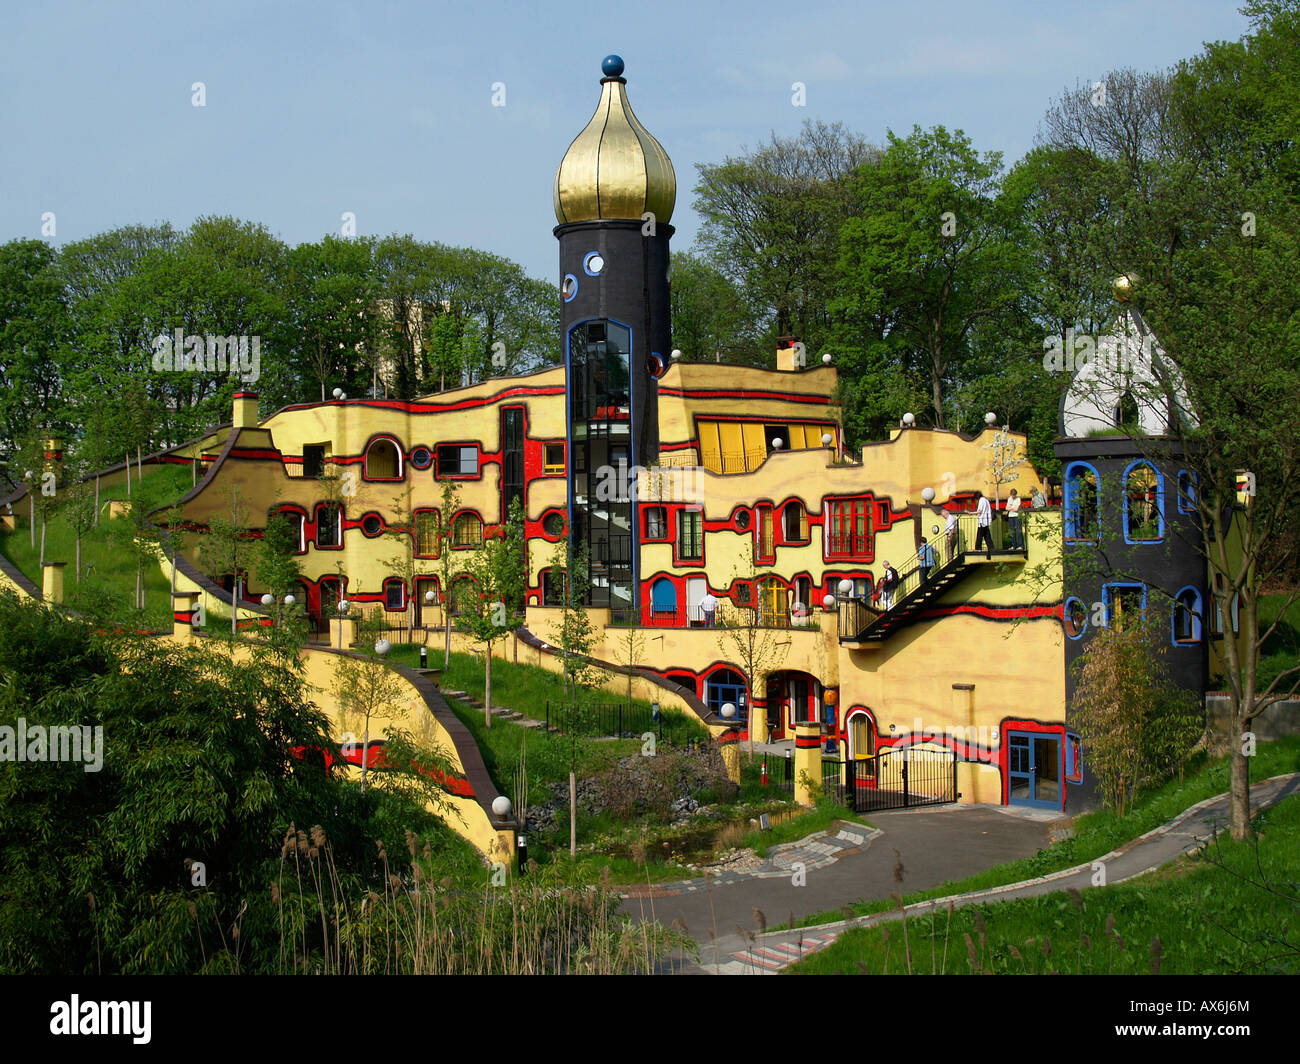 Los turistas en edificios multicolor en el parque Grugapark, Essen, Alemania Foto de stock